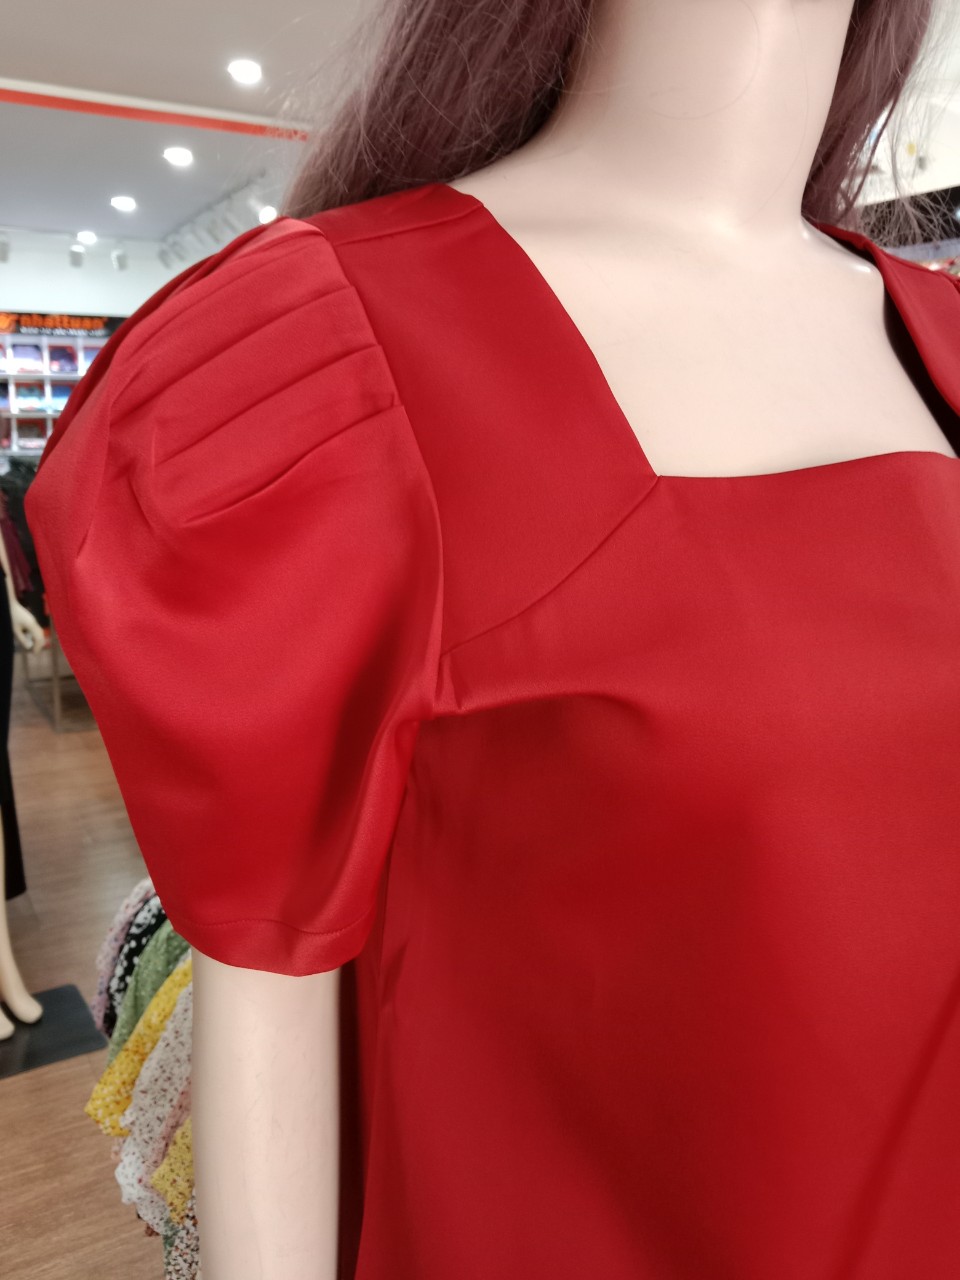 Áo nữ kiểu chất liệu satin, tay và ngực áo cách điệu thời trang của Nhật Tuấn